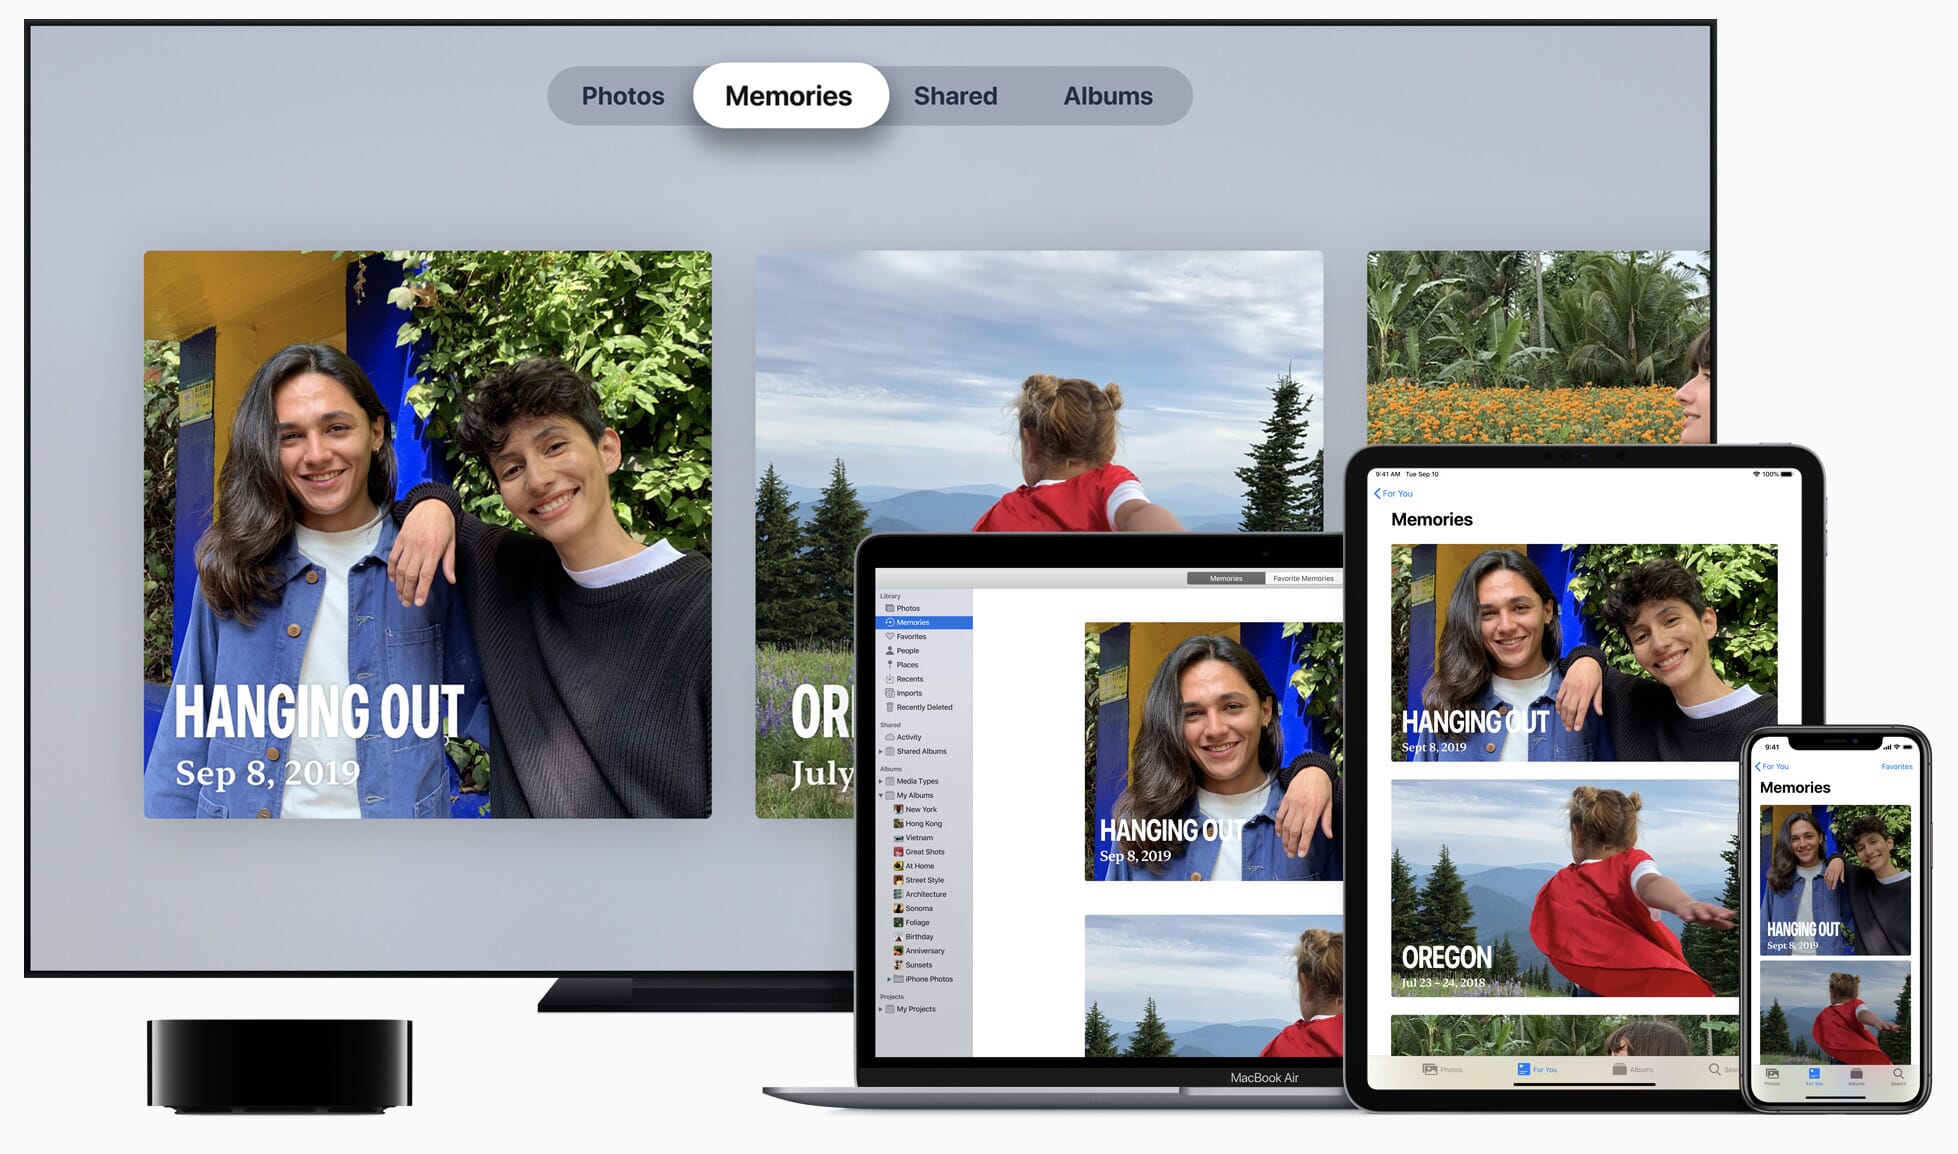 Recentemente, a Apple fez actualizações que permitem à aplicação Fotos criar álbuns personalizados com base nas pessoas, lugares, e coisas presentes em cada foto.